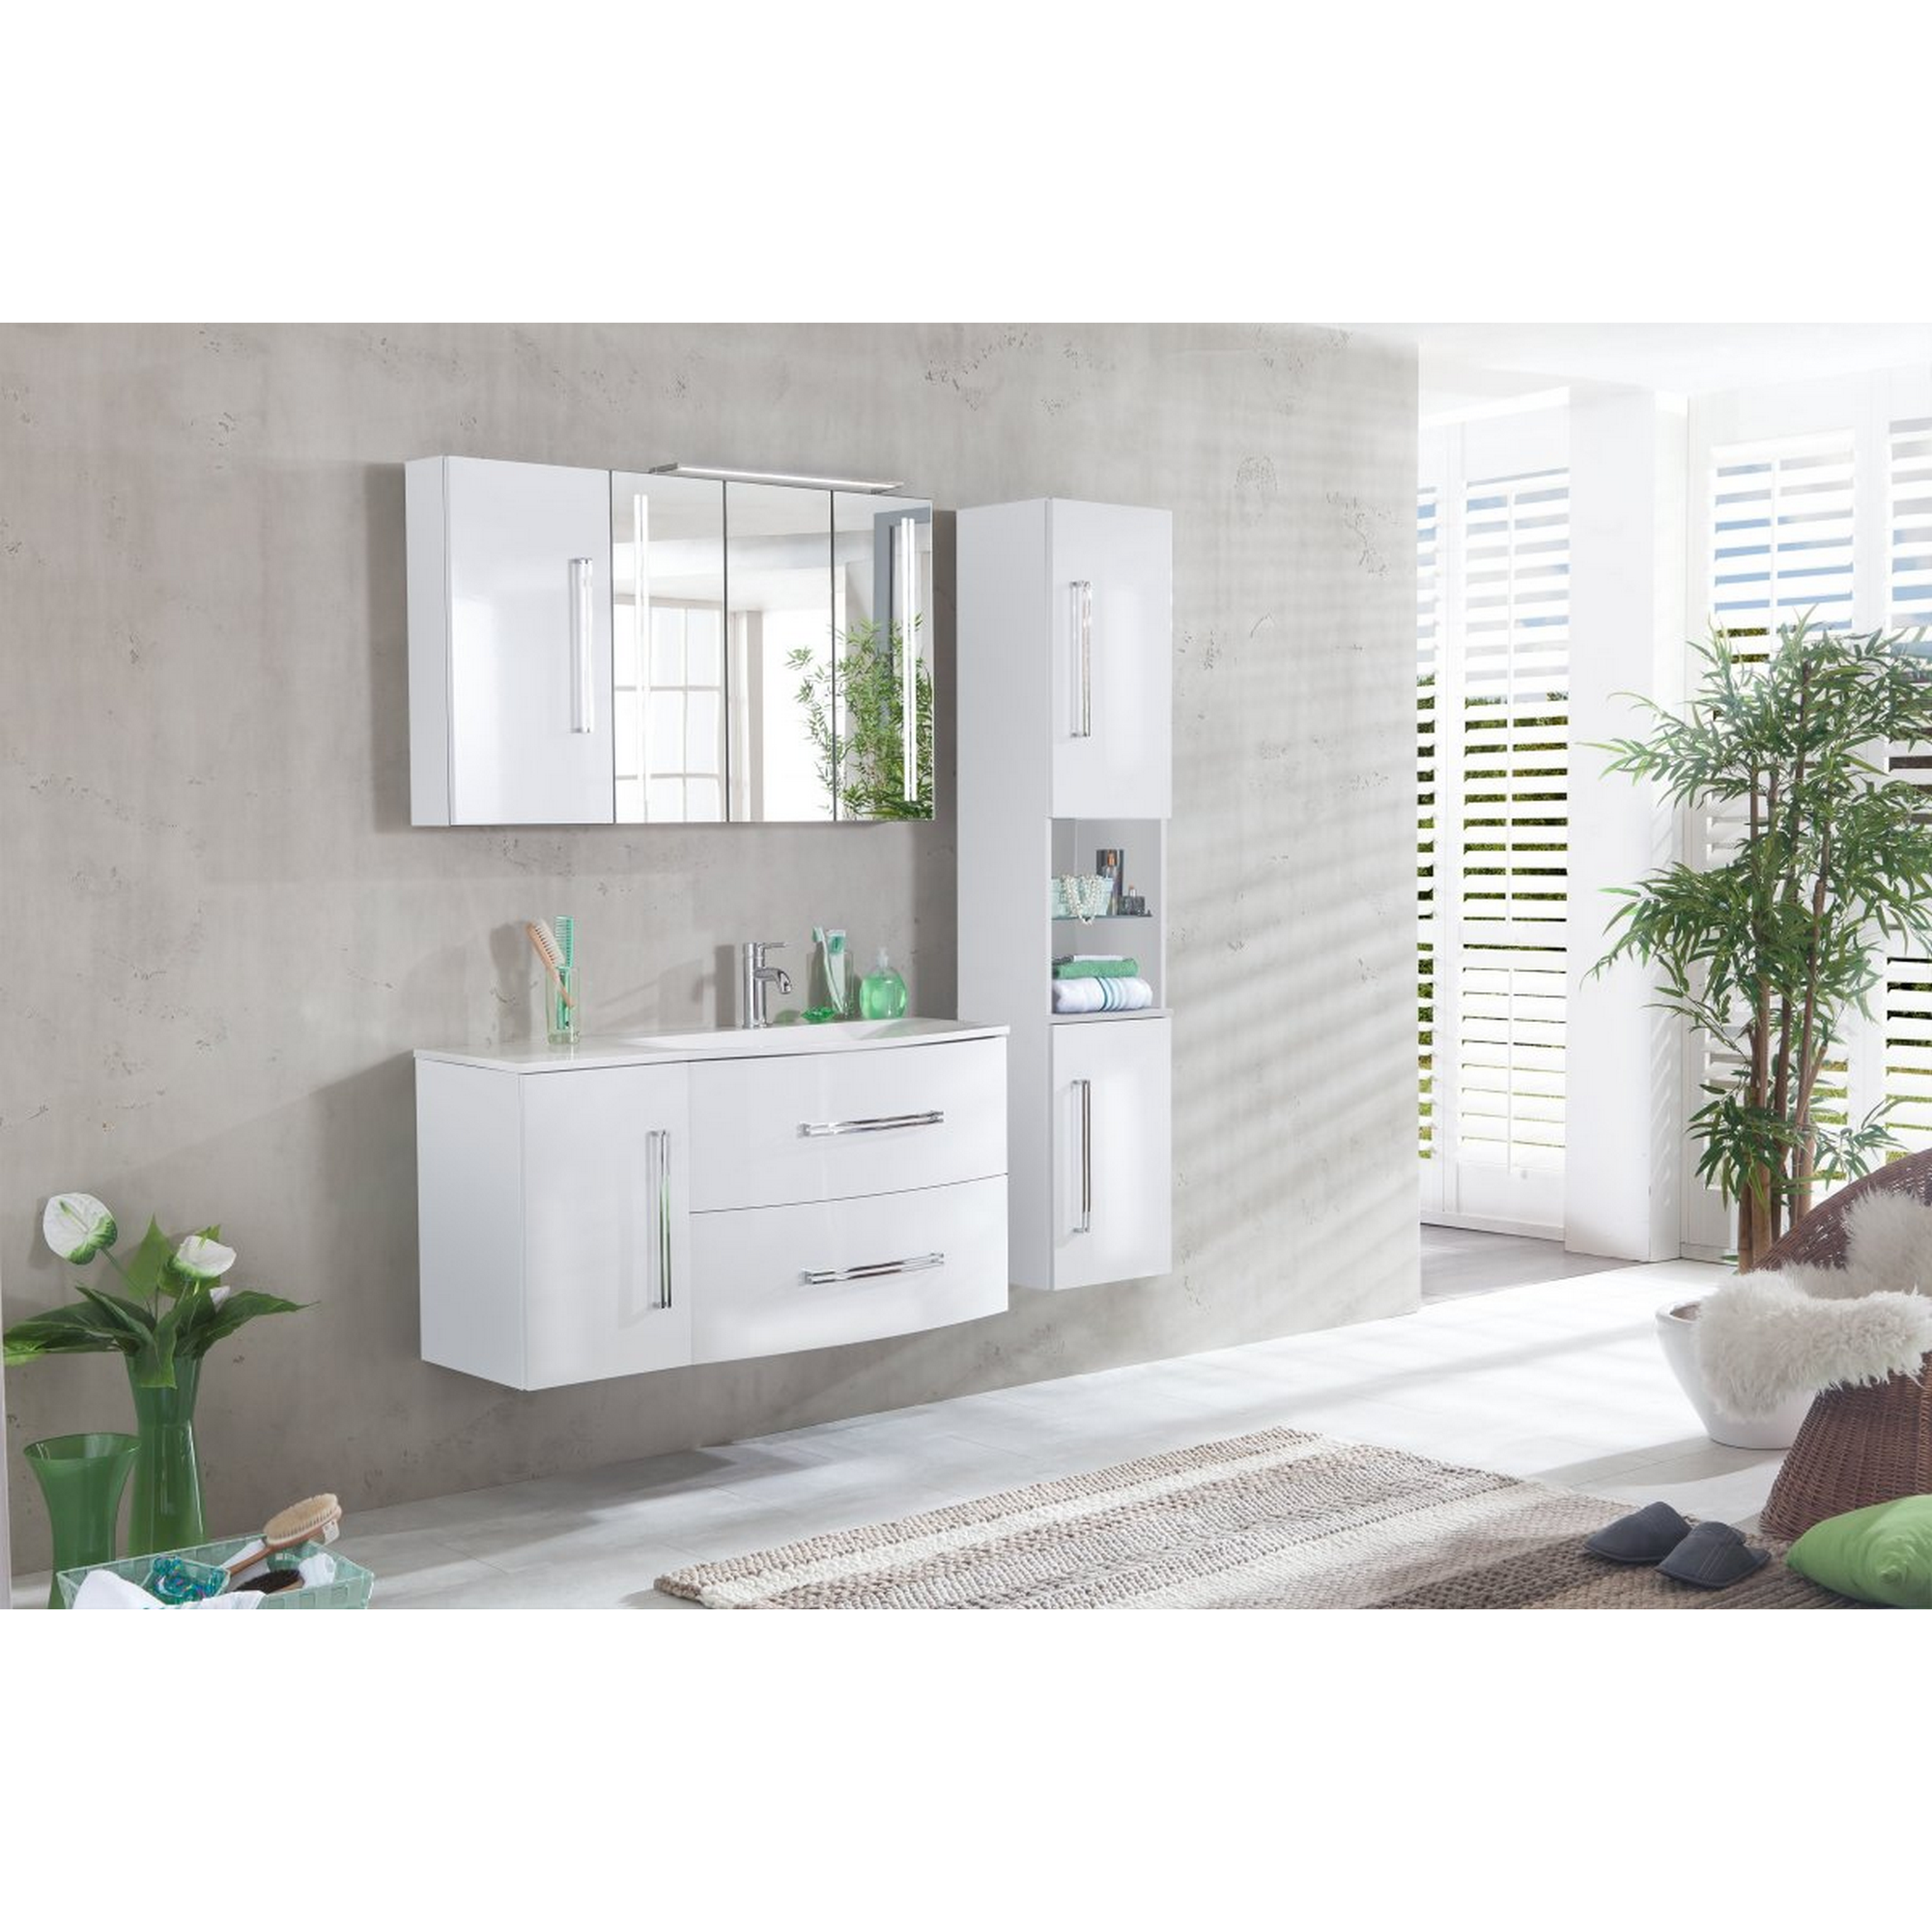 Waschtisch-Unterbau 'Lugano' weiß 35 x 57,5 x 39,5 cm + product picture